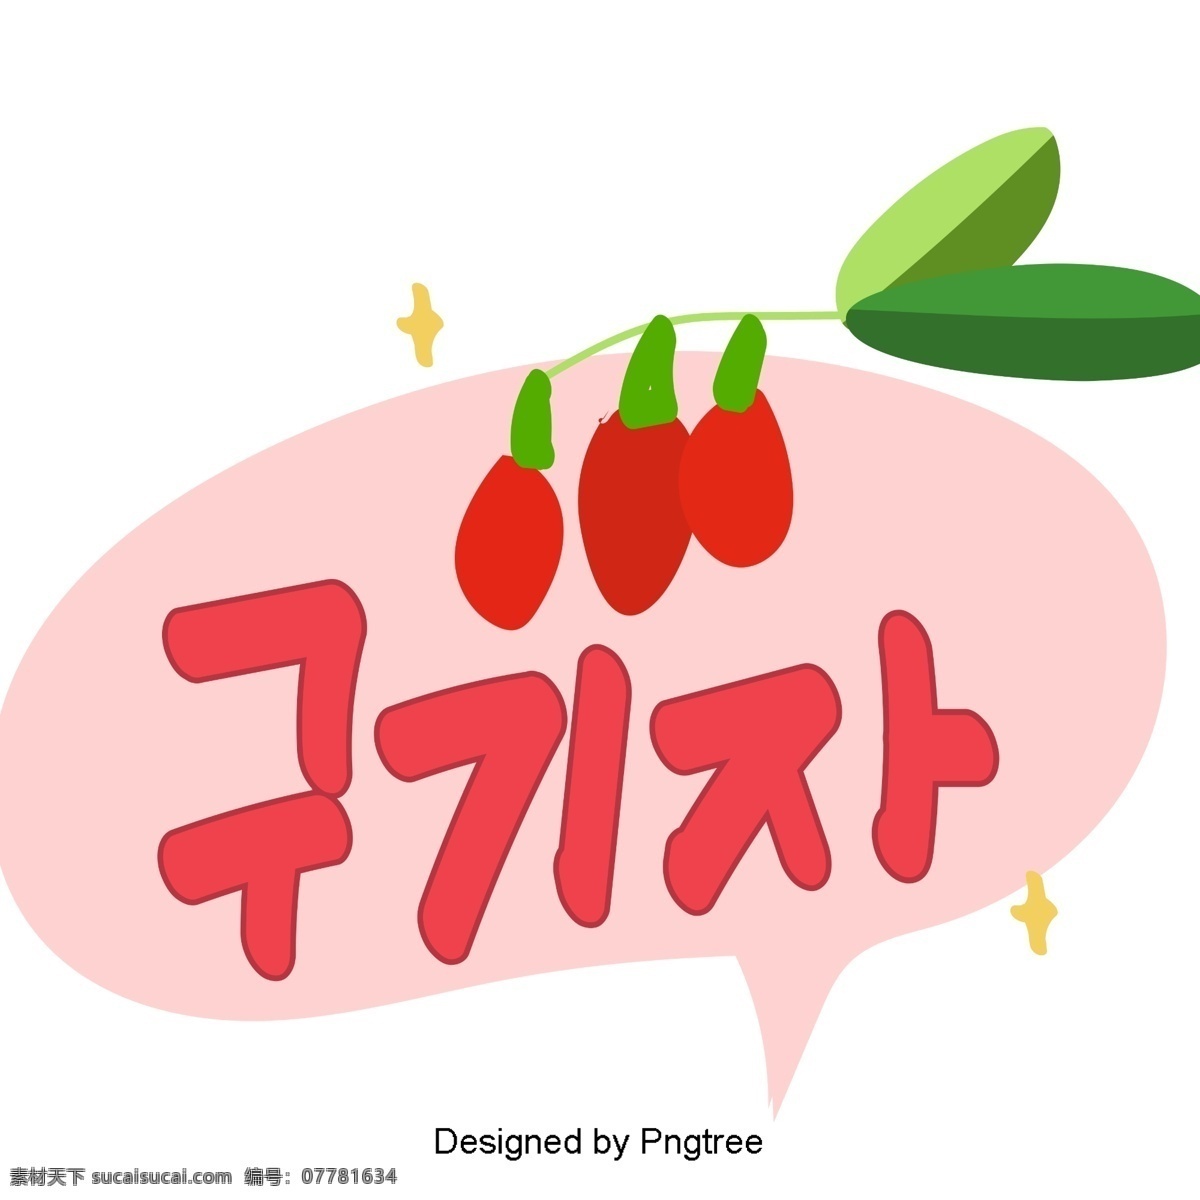 枸杞 果实 植物 性状 红 纸 上用 移动 元素 字体 样式 红色 水果 韩文 可爱 字形 笔和纸 移动支付方式 动画片